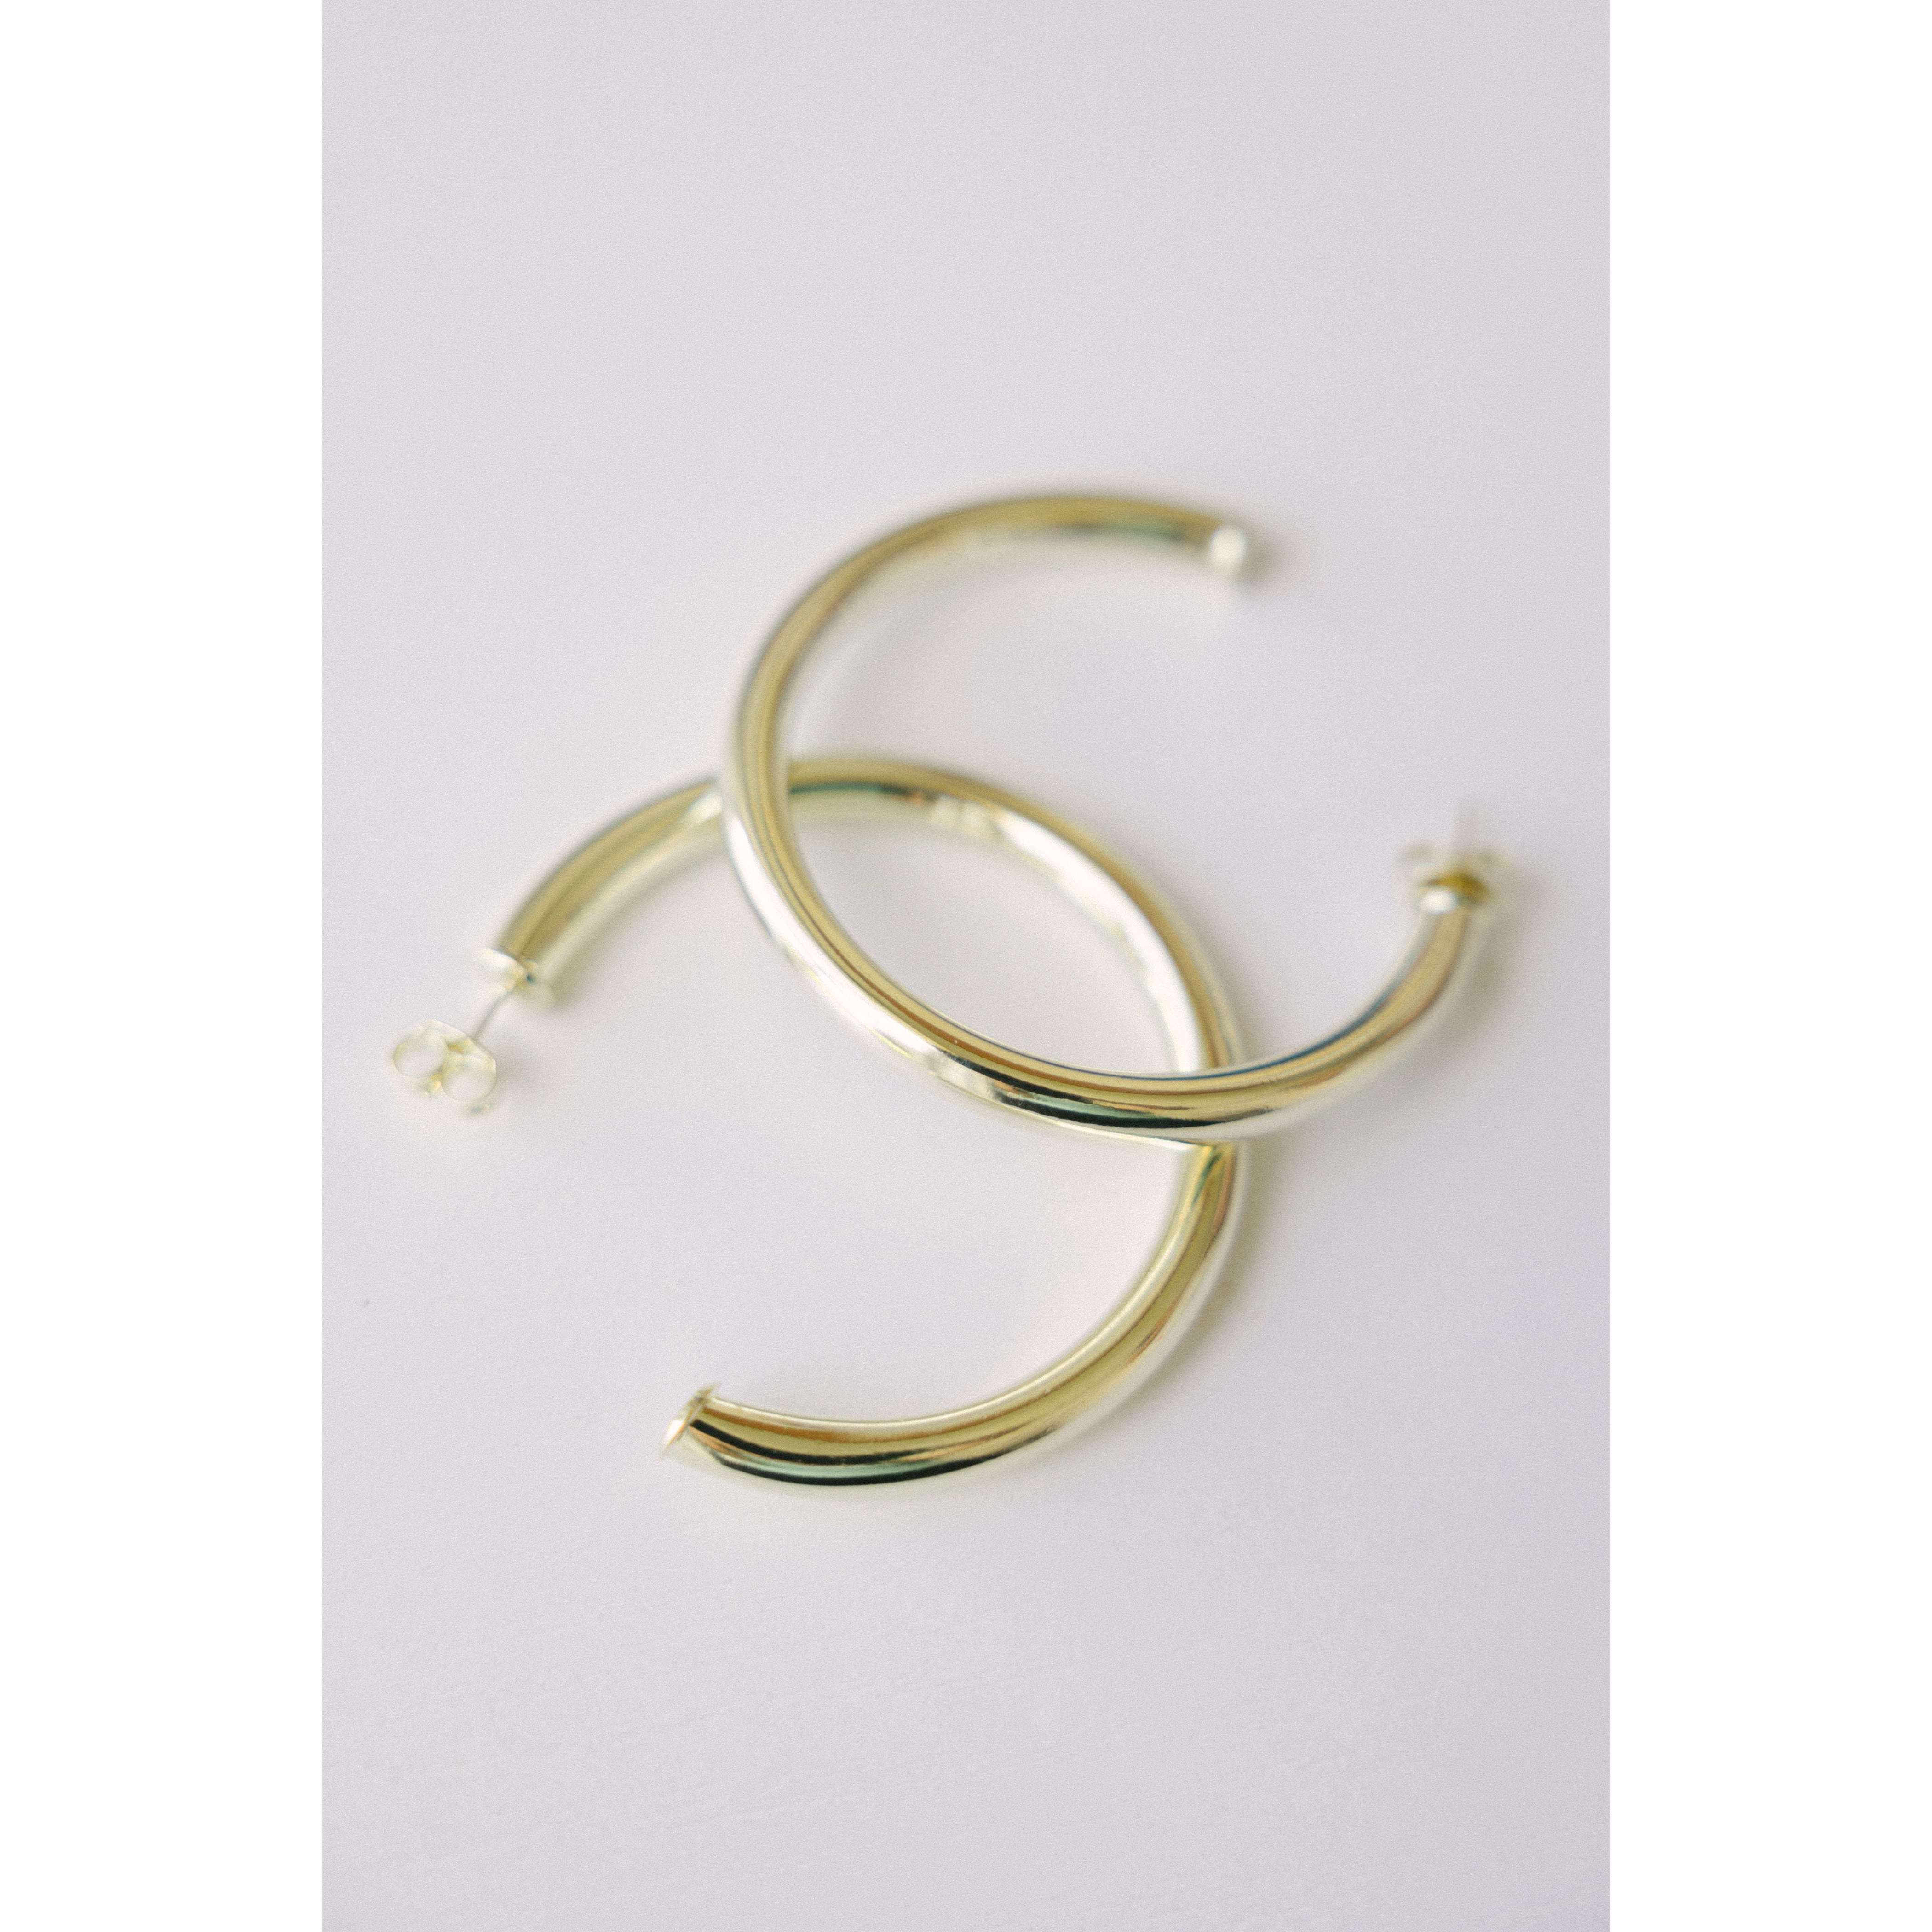 8.28 Boutique:Sheila Fajl,Sheila Fajl Arlene Hoop Earrings 18K Gold Plated,Earrings